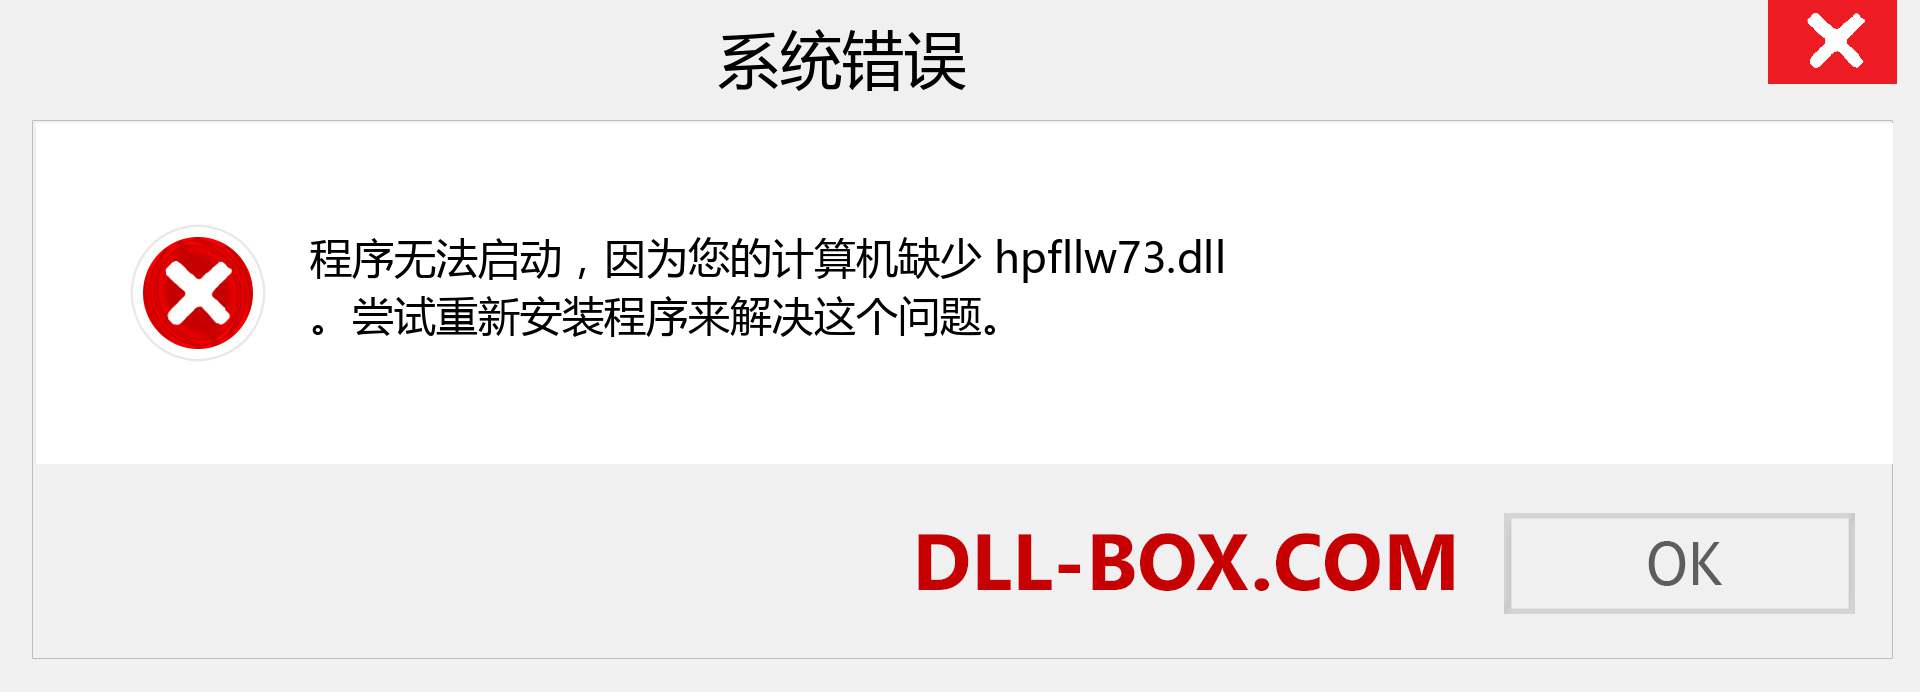 hpfllw73.dll 文件丢失？。 适用于 Windows 7、8、10 的下载 - 修复 Windows、照片、图像上的 hpfllw73 dll 丢失错误